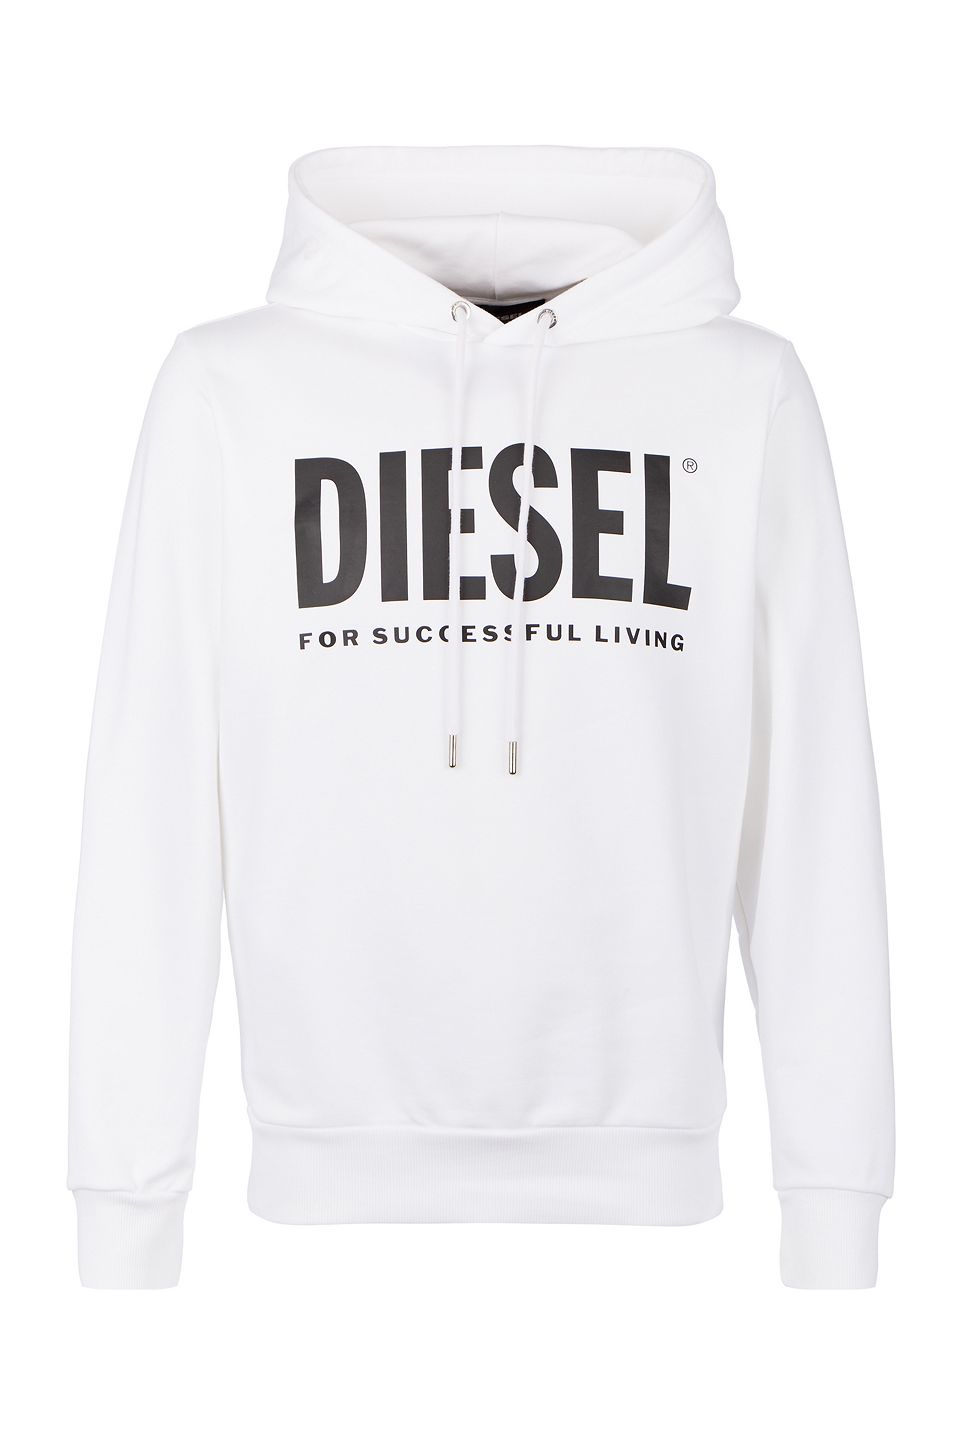 Дизель бел. Diesel худи мужская белая с капюшоном. Diesel 78 худи. Кофта Diesel 00sns20kasl. Diesel худи белая.